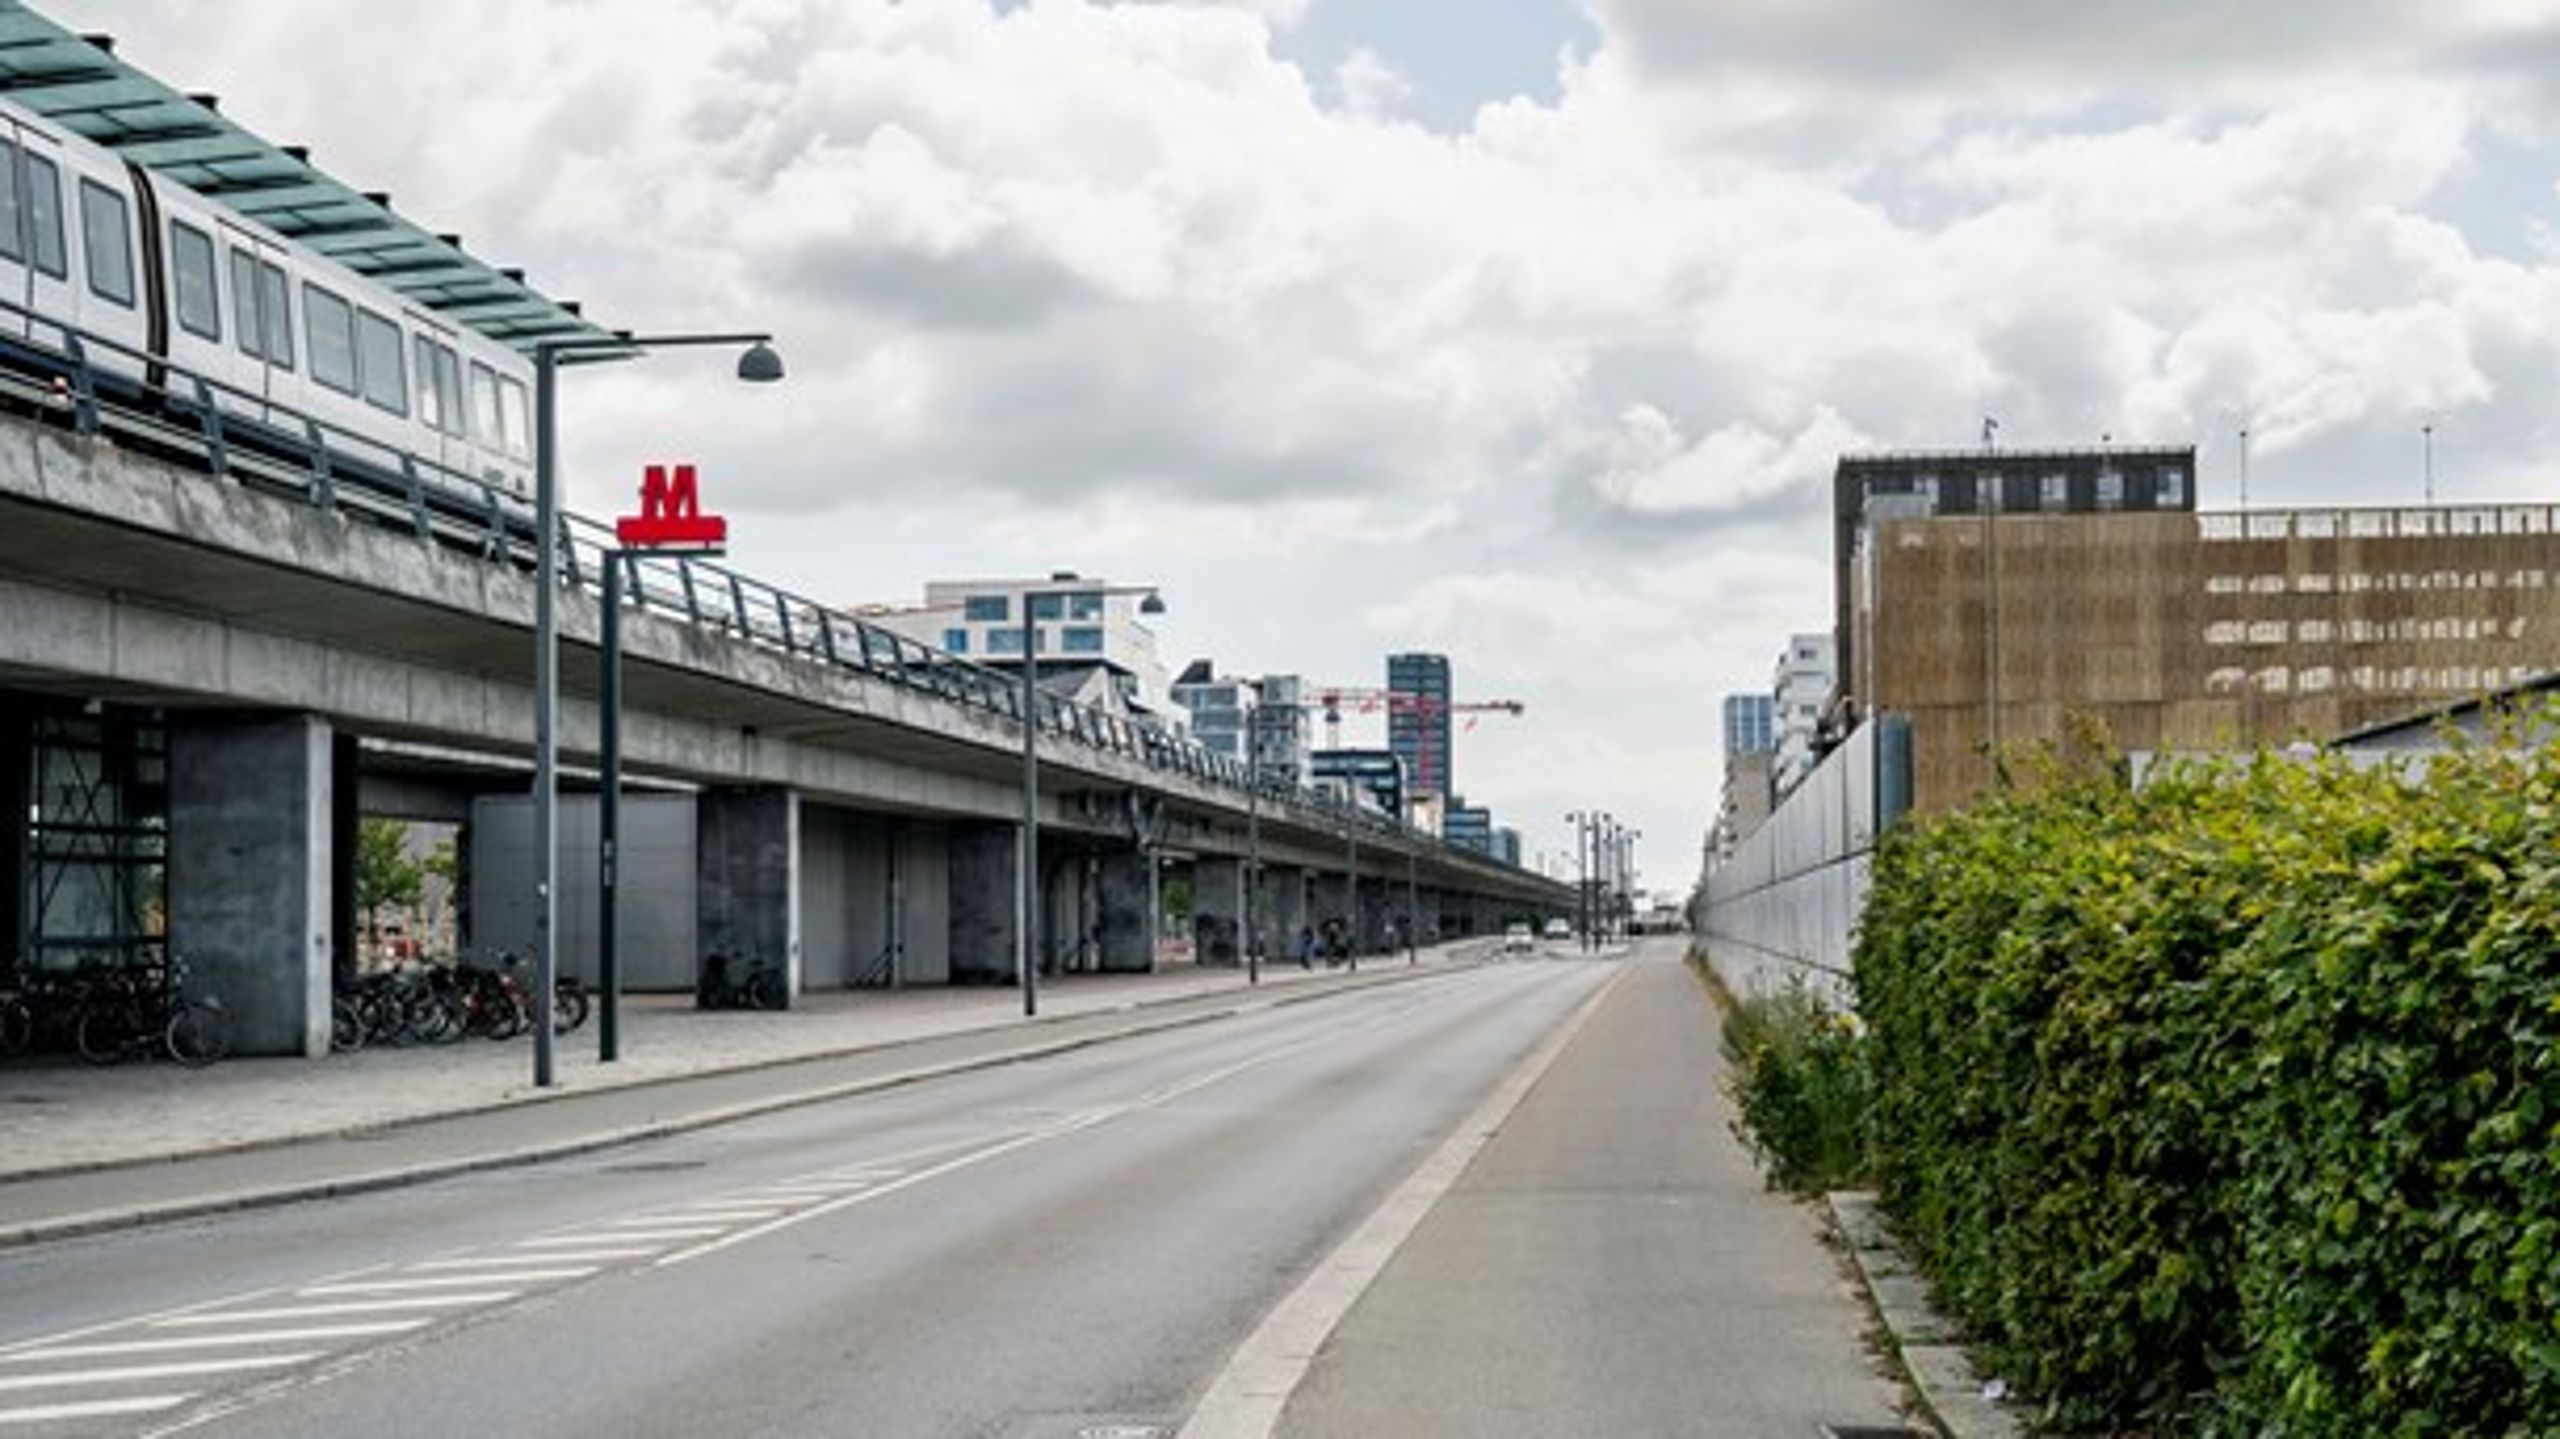 Tæt på metrostop Ørestad er der planlagt hele seks p-huse. By &amp; Havn tænker ikke byliv eller&nbsp;det lokale erhvervsliv ind i byggeriet af disse kolosser. Det er virkelig ærgerligt, skriver Nicolai Eilstrup.